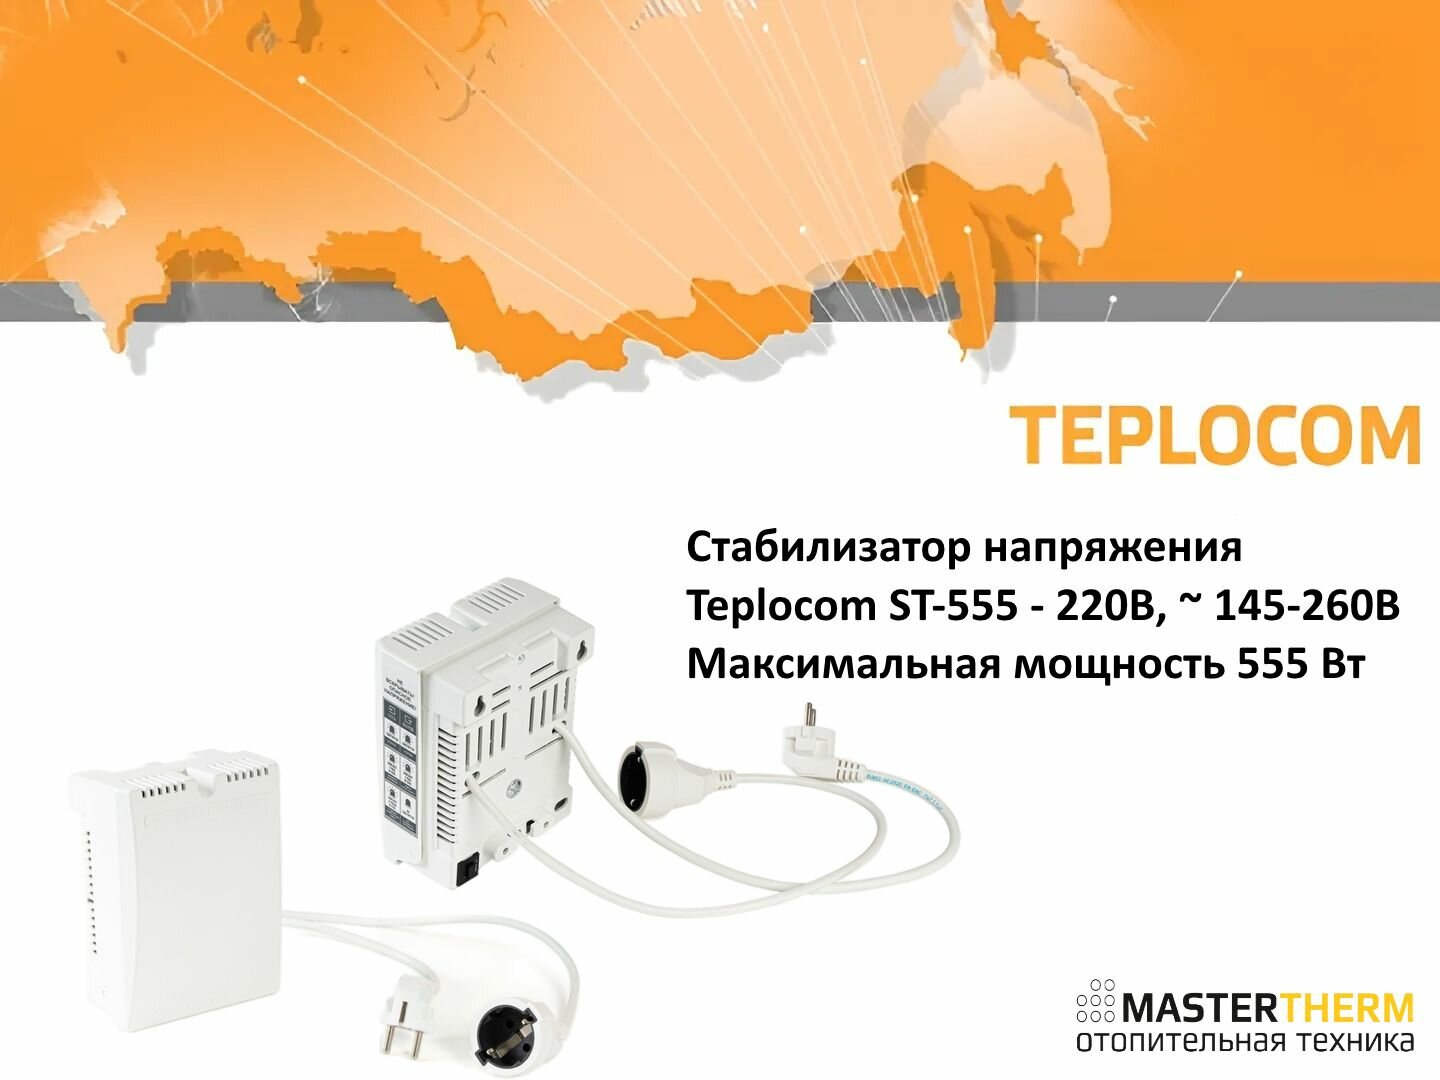 Стабилизатор напряжения Teplocom ST-555 - 220В, 145-260В